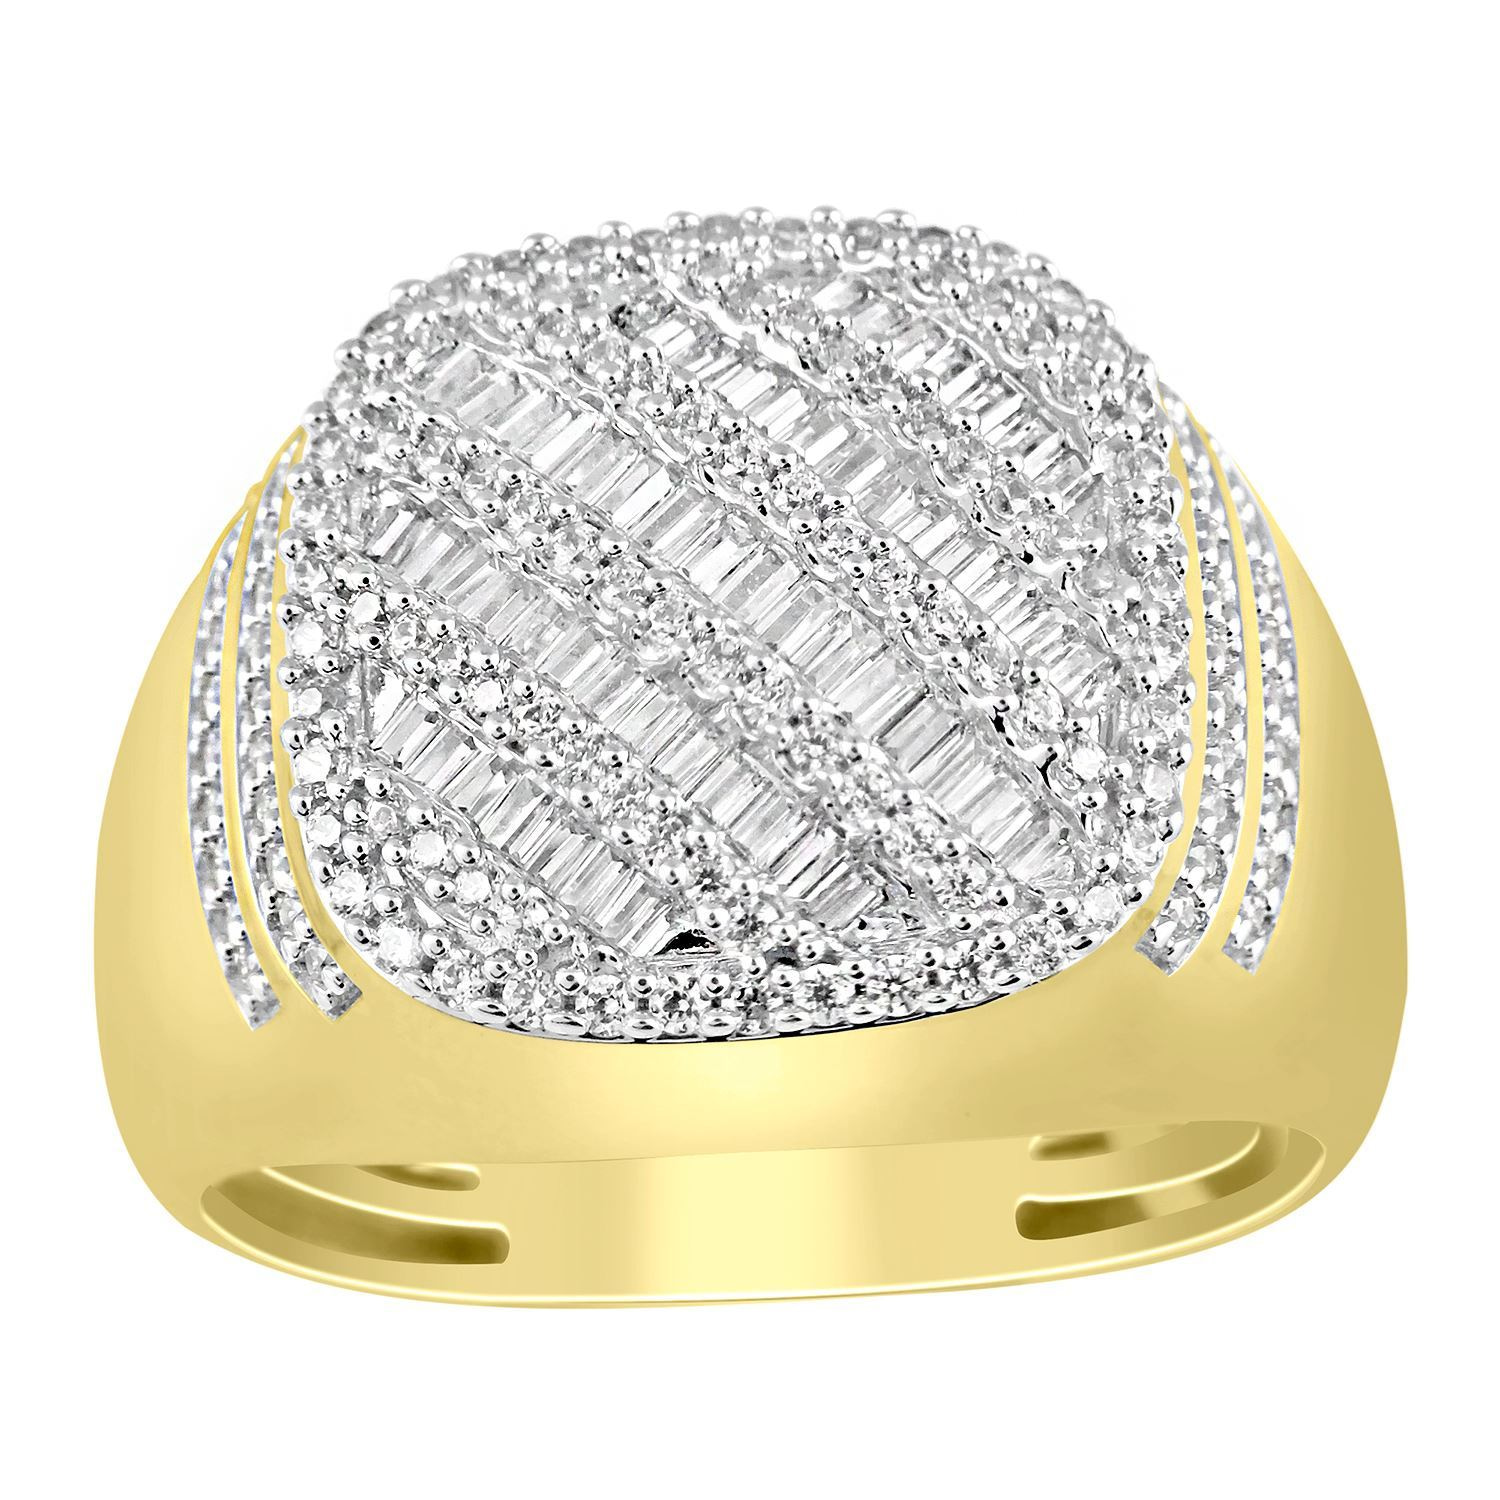 0011299_mens-ring-1-ct-round-diamond-10k-yellow-gold.jpeg